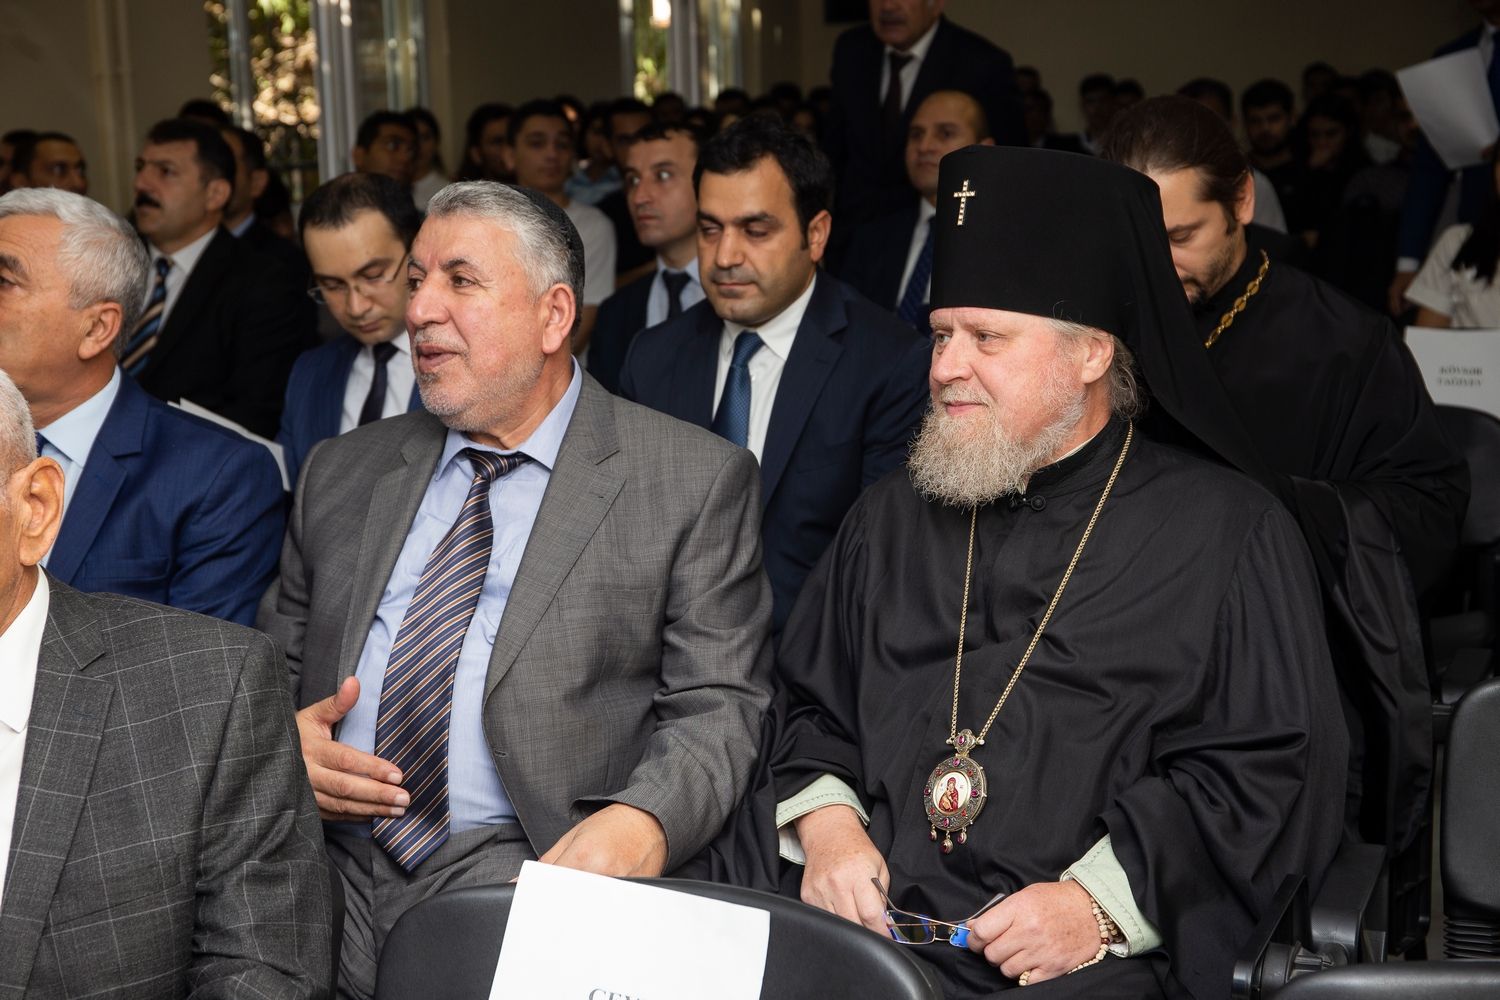 Высокопреосвященный архиепископ Александр принял участие в открытии Азербайджанского института теологии. 